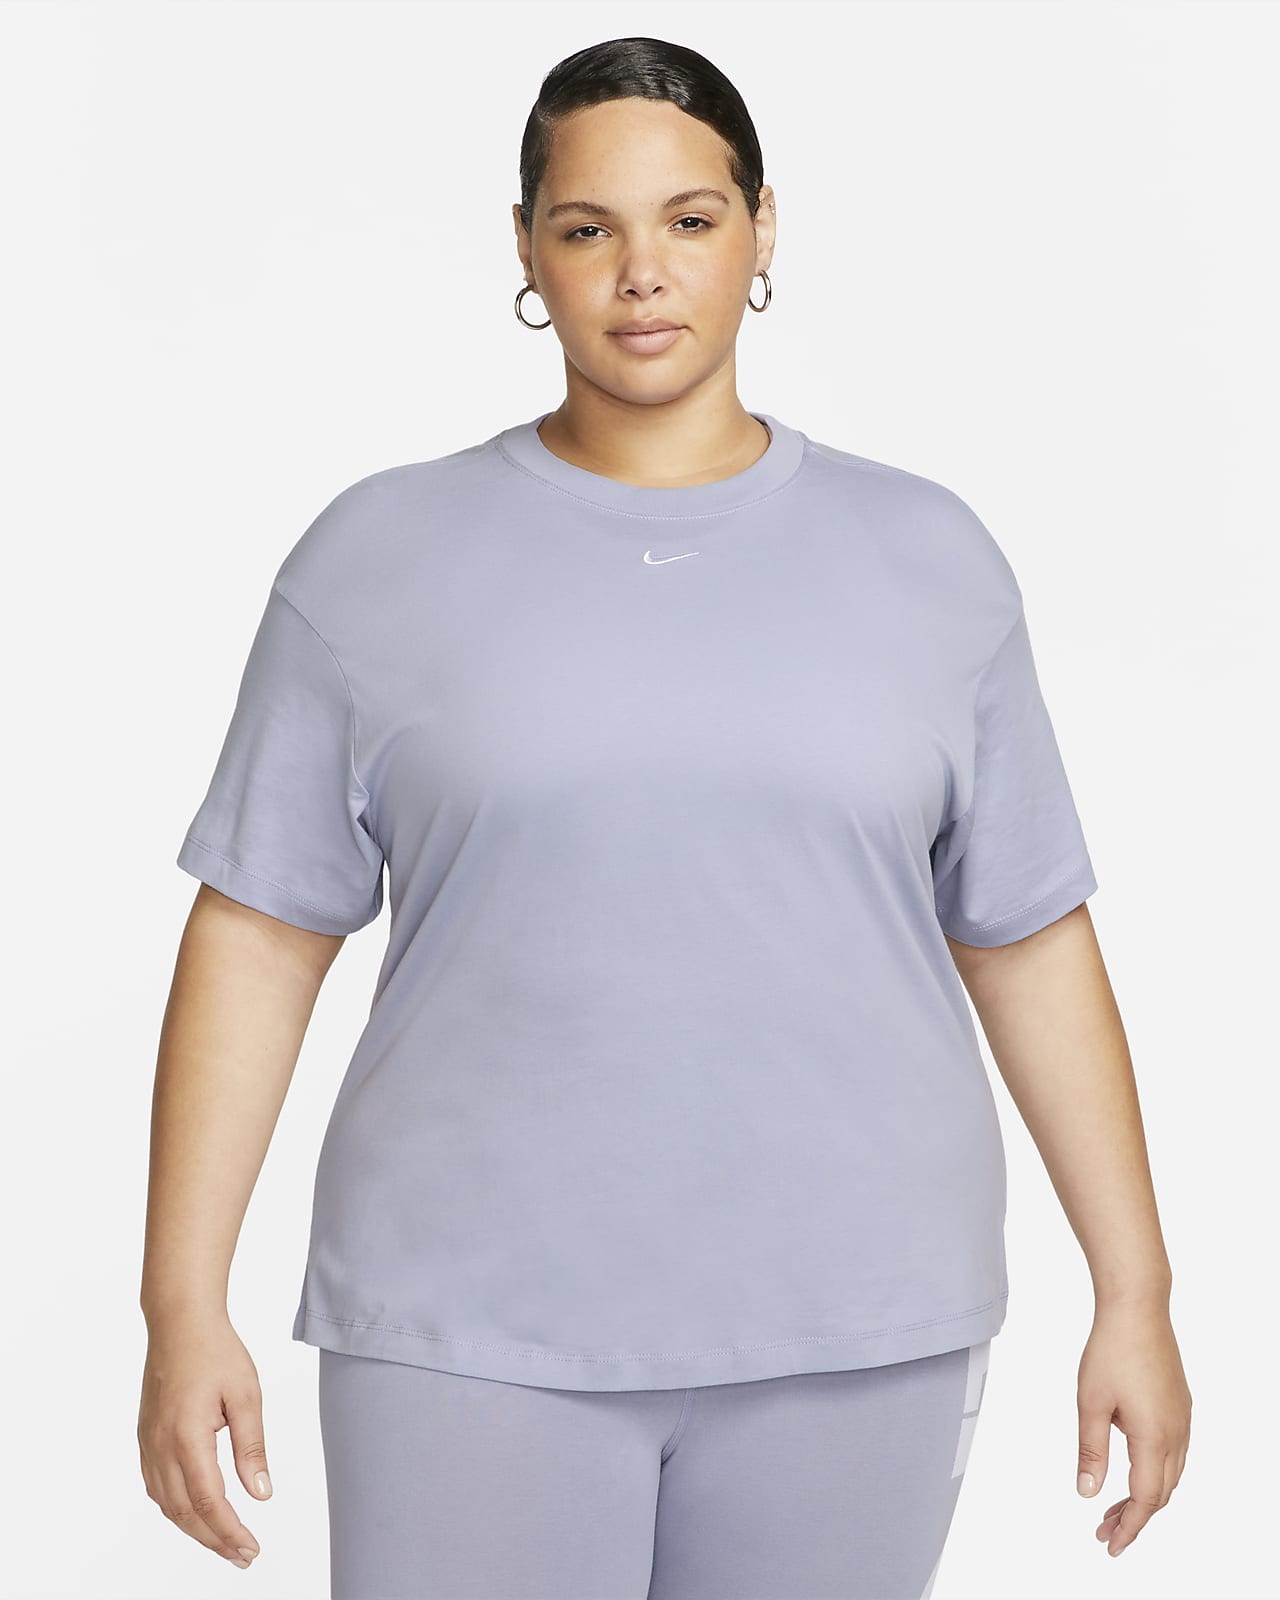 Sportswear Essential Women's Short-Sleeve Top Size). Nike.com